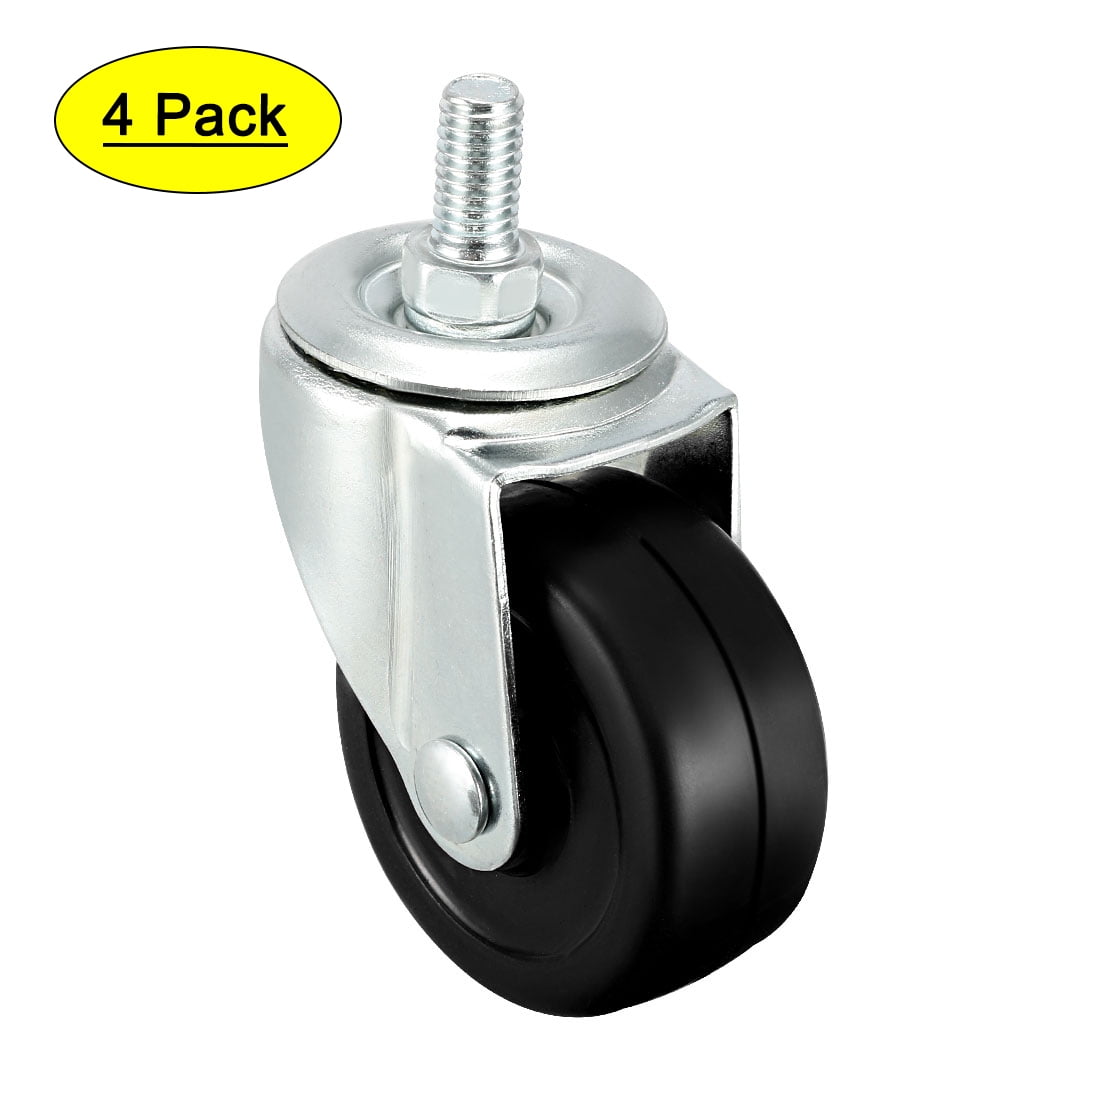 4pcs 1.6" Plate Swivel Caster Wheels Brake M8 Thread Stem for Rack Shelf 